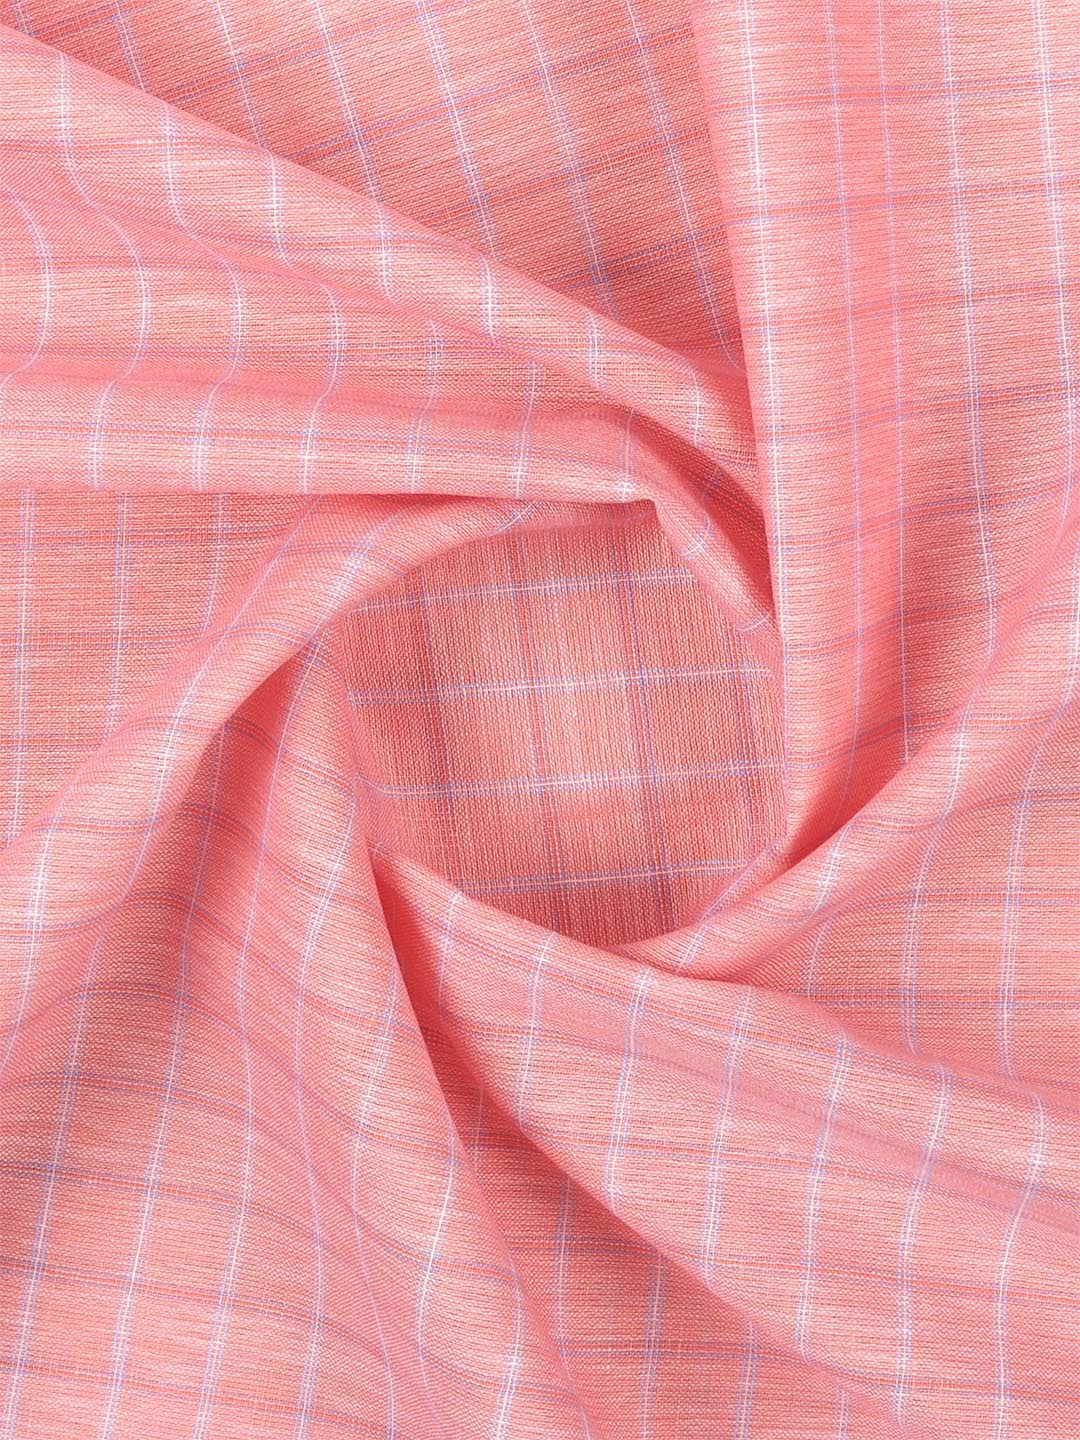 Cotton Peach Colour Check Shirt Fabric-High Style